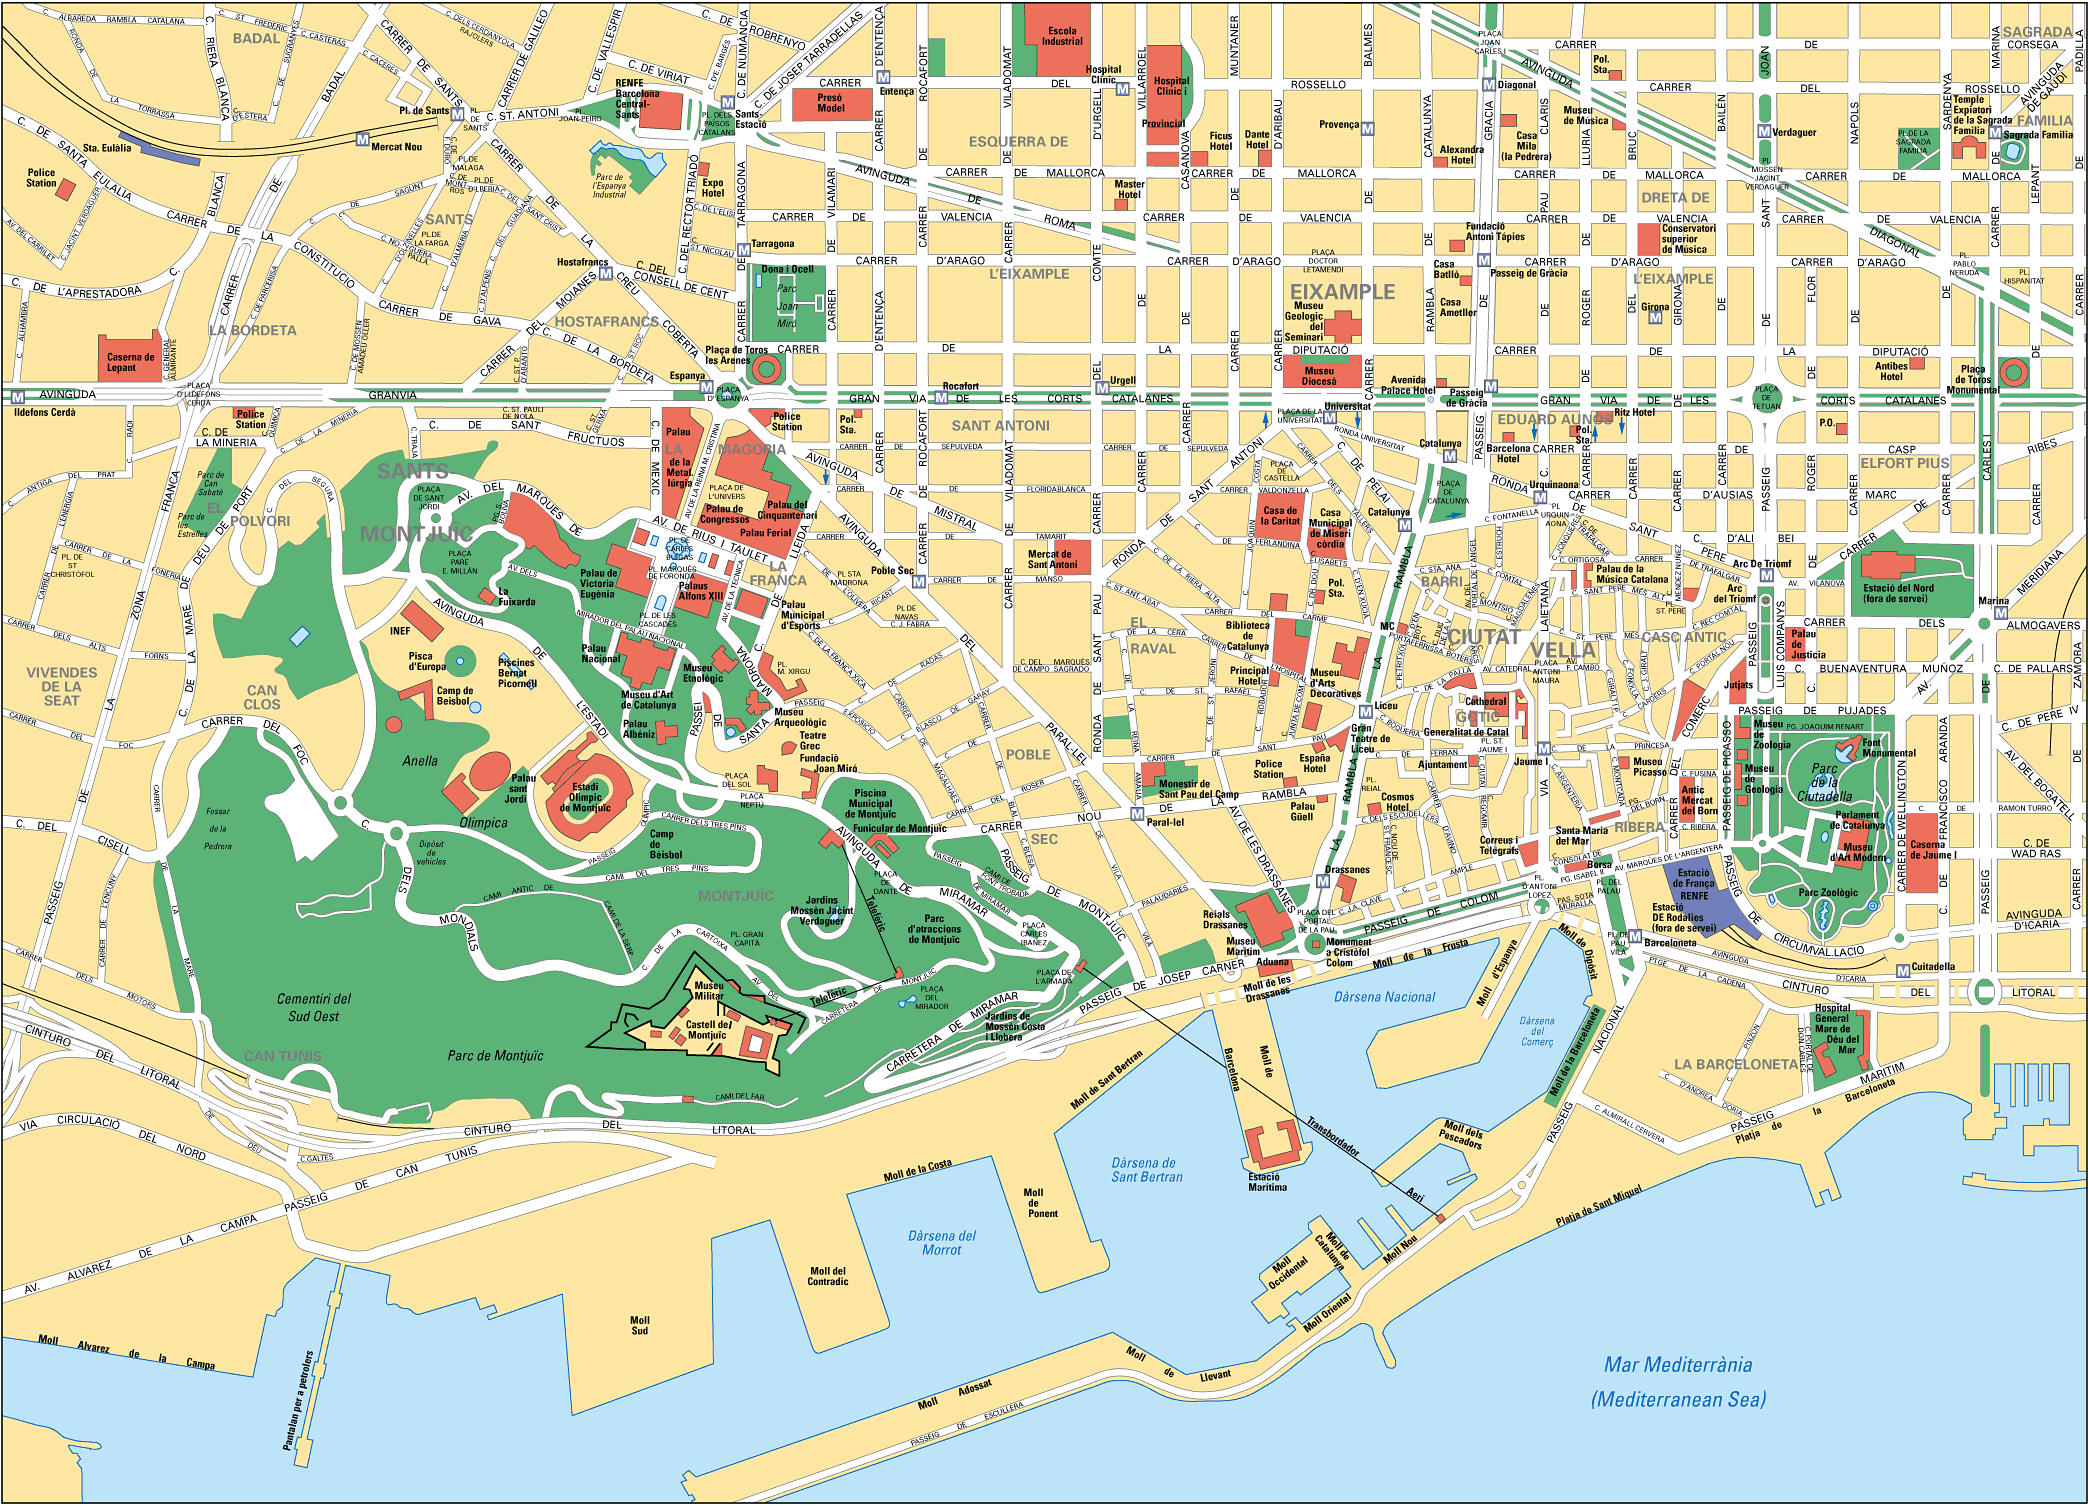 Mapa de Barcelona